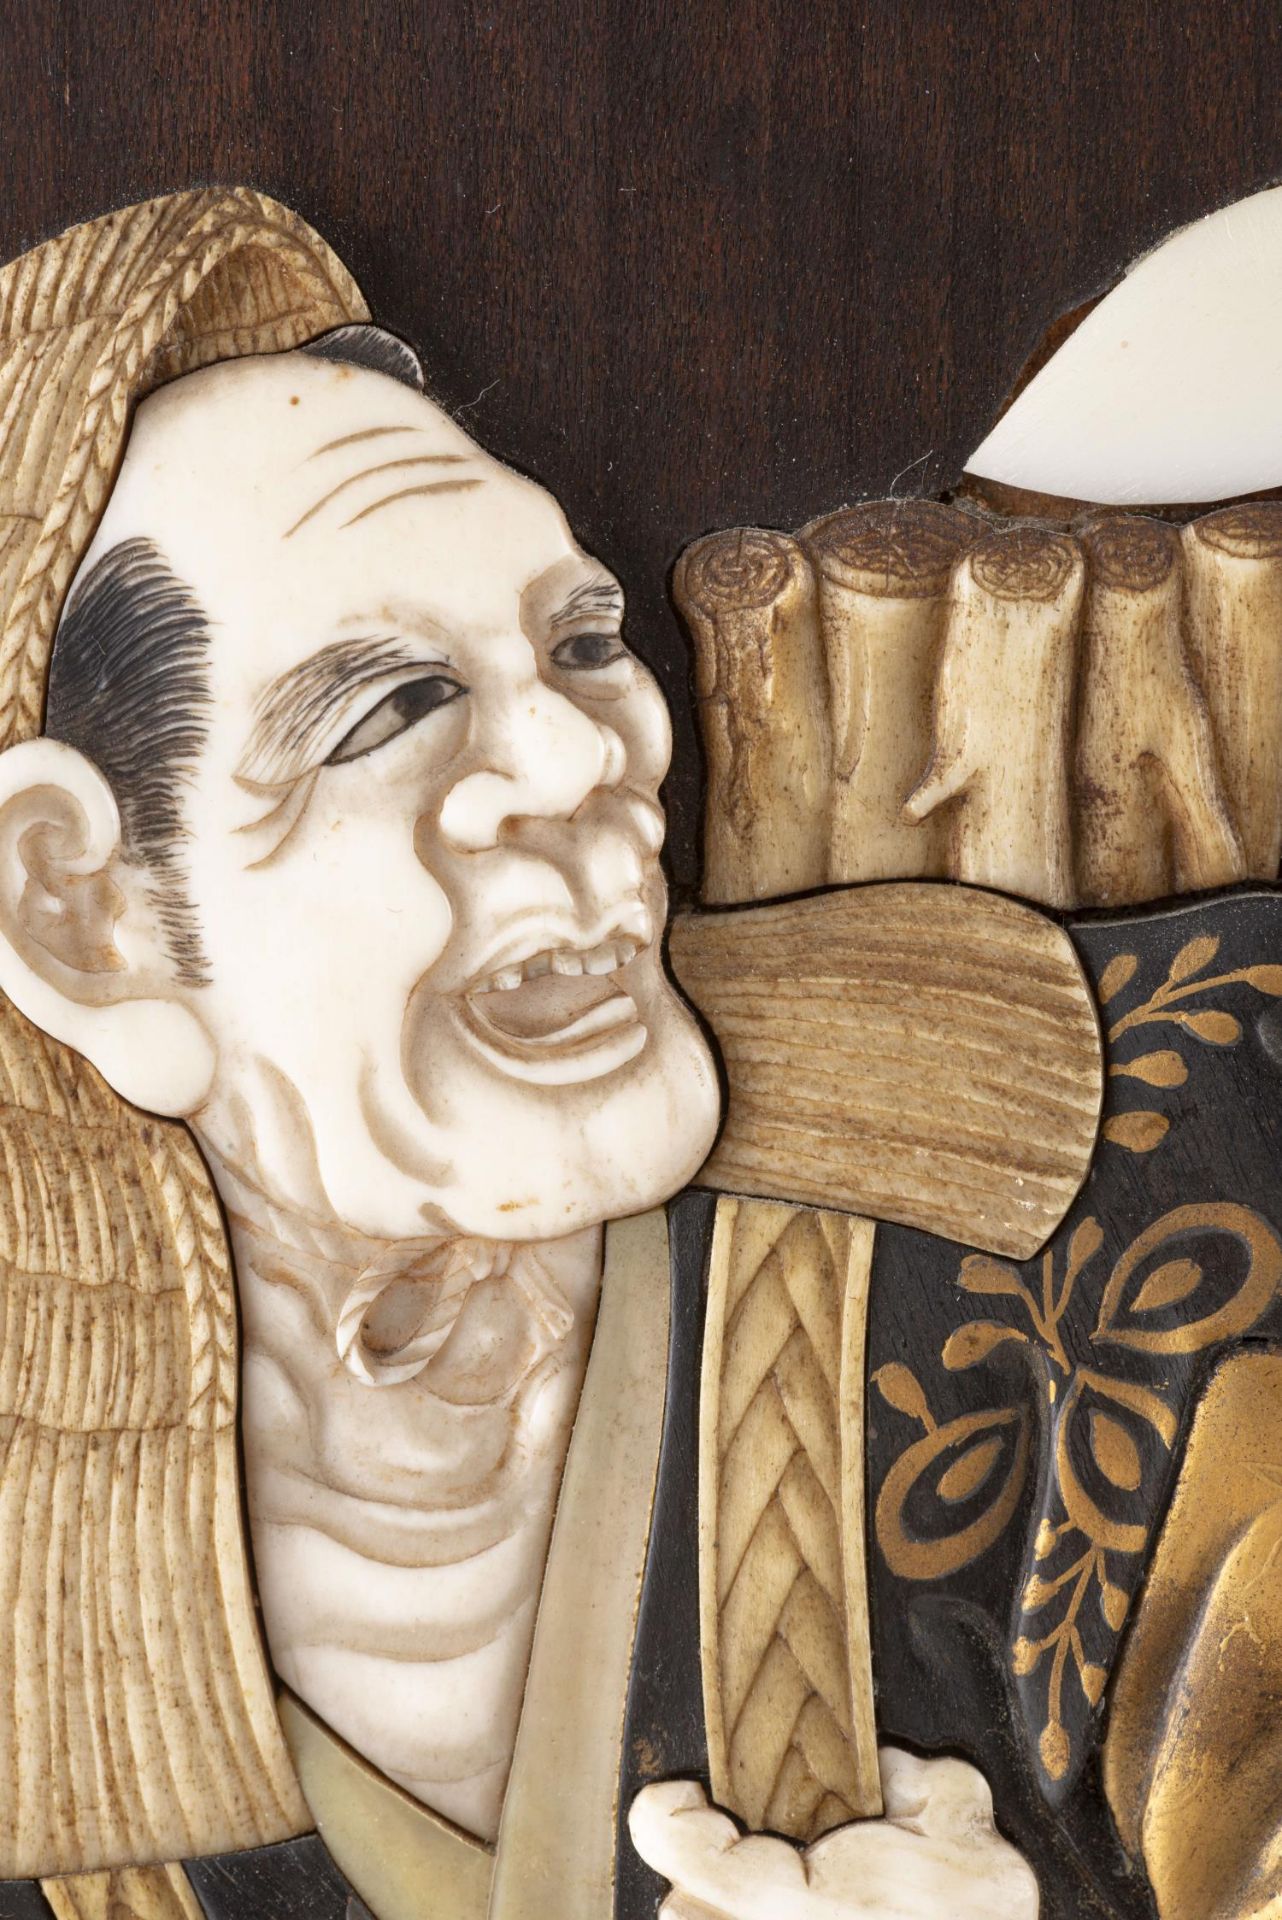 JAPON, Panneau en bois avec incrustations d'ivoire, nacre, laque d'or et os... - Image 4 of 6